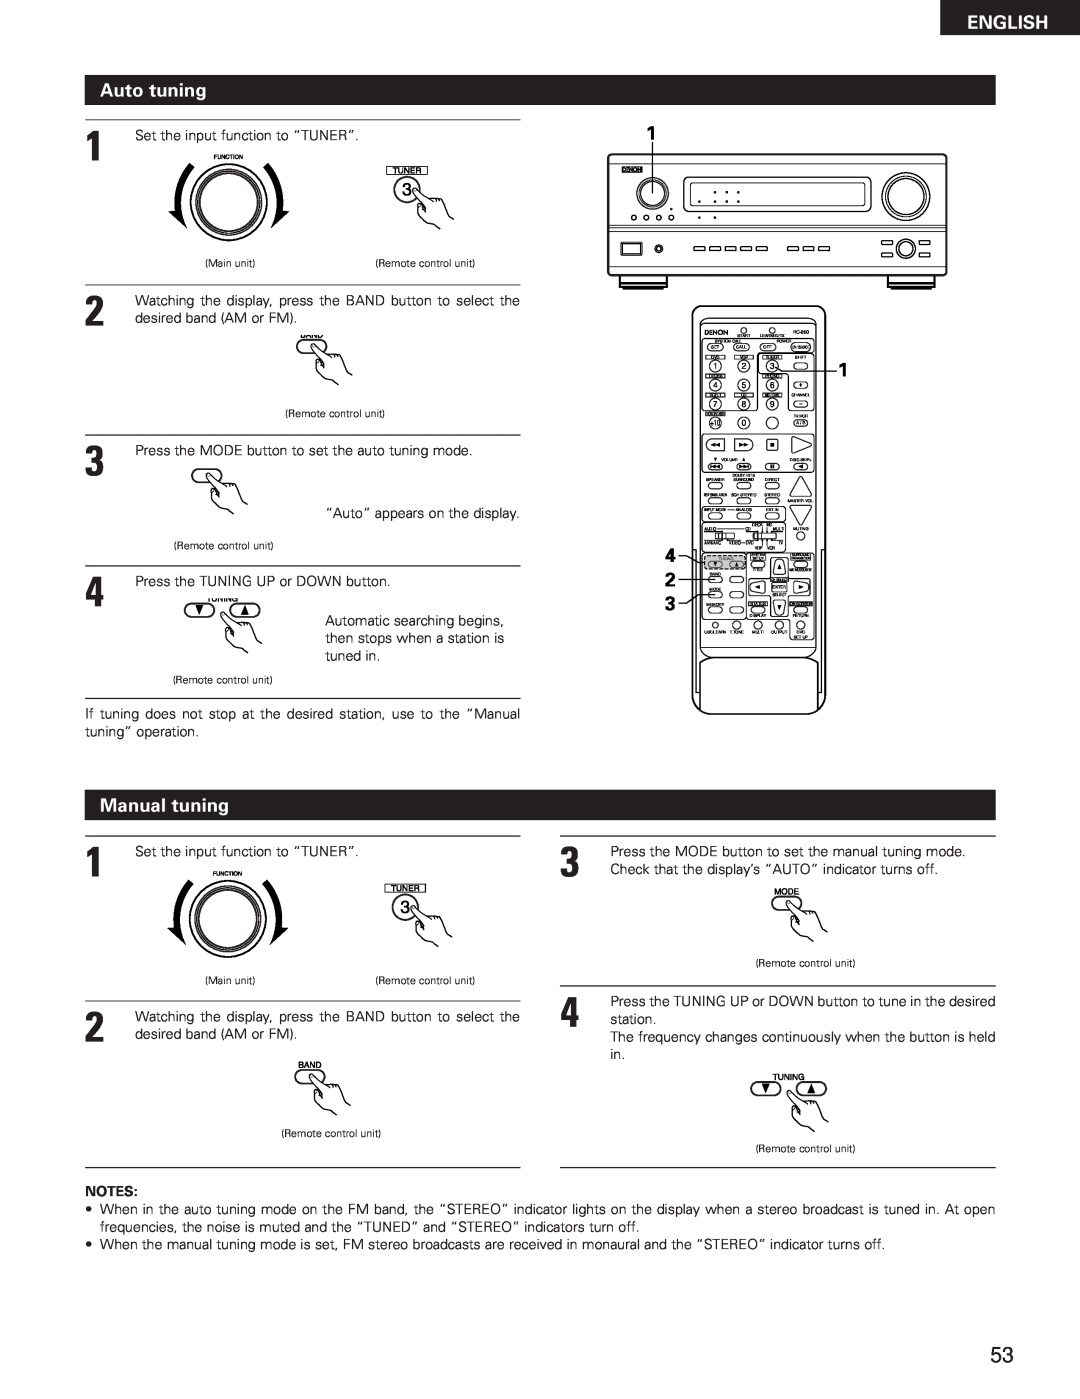 Denon AVR-3300 manual ENGLISH Auto tuning, Manual tuning 